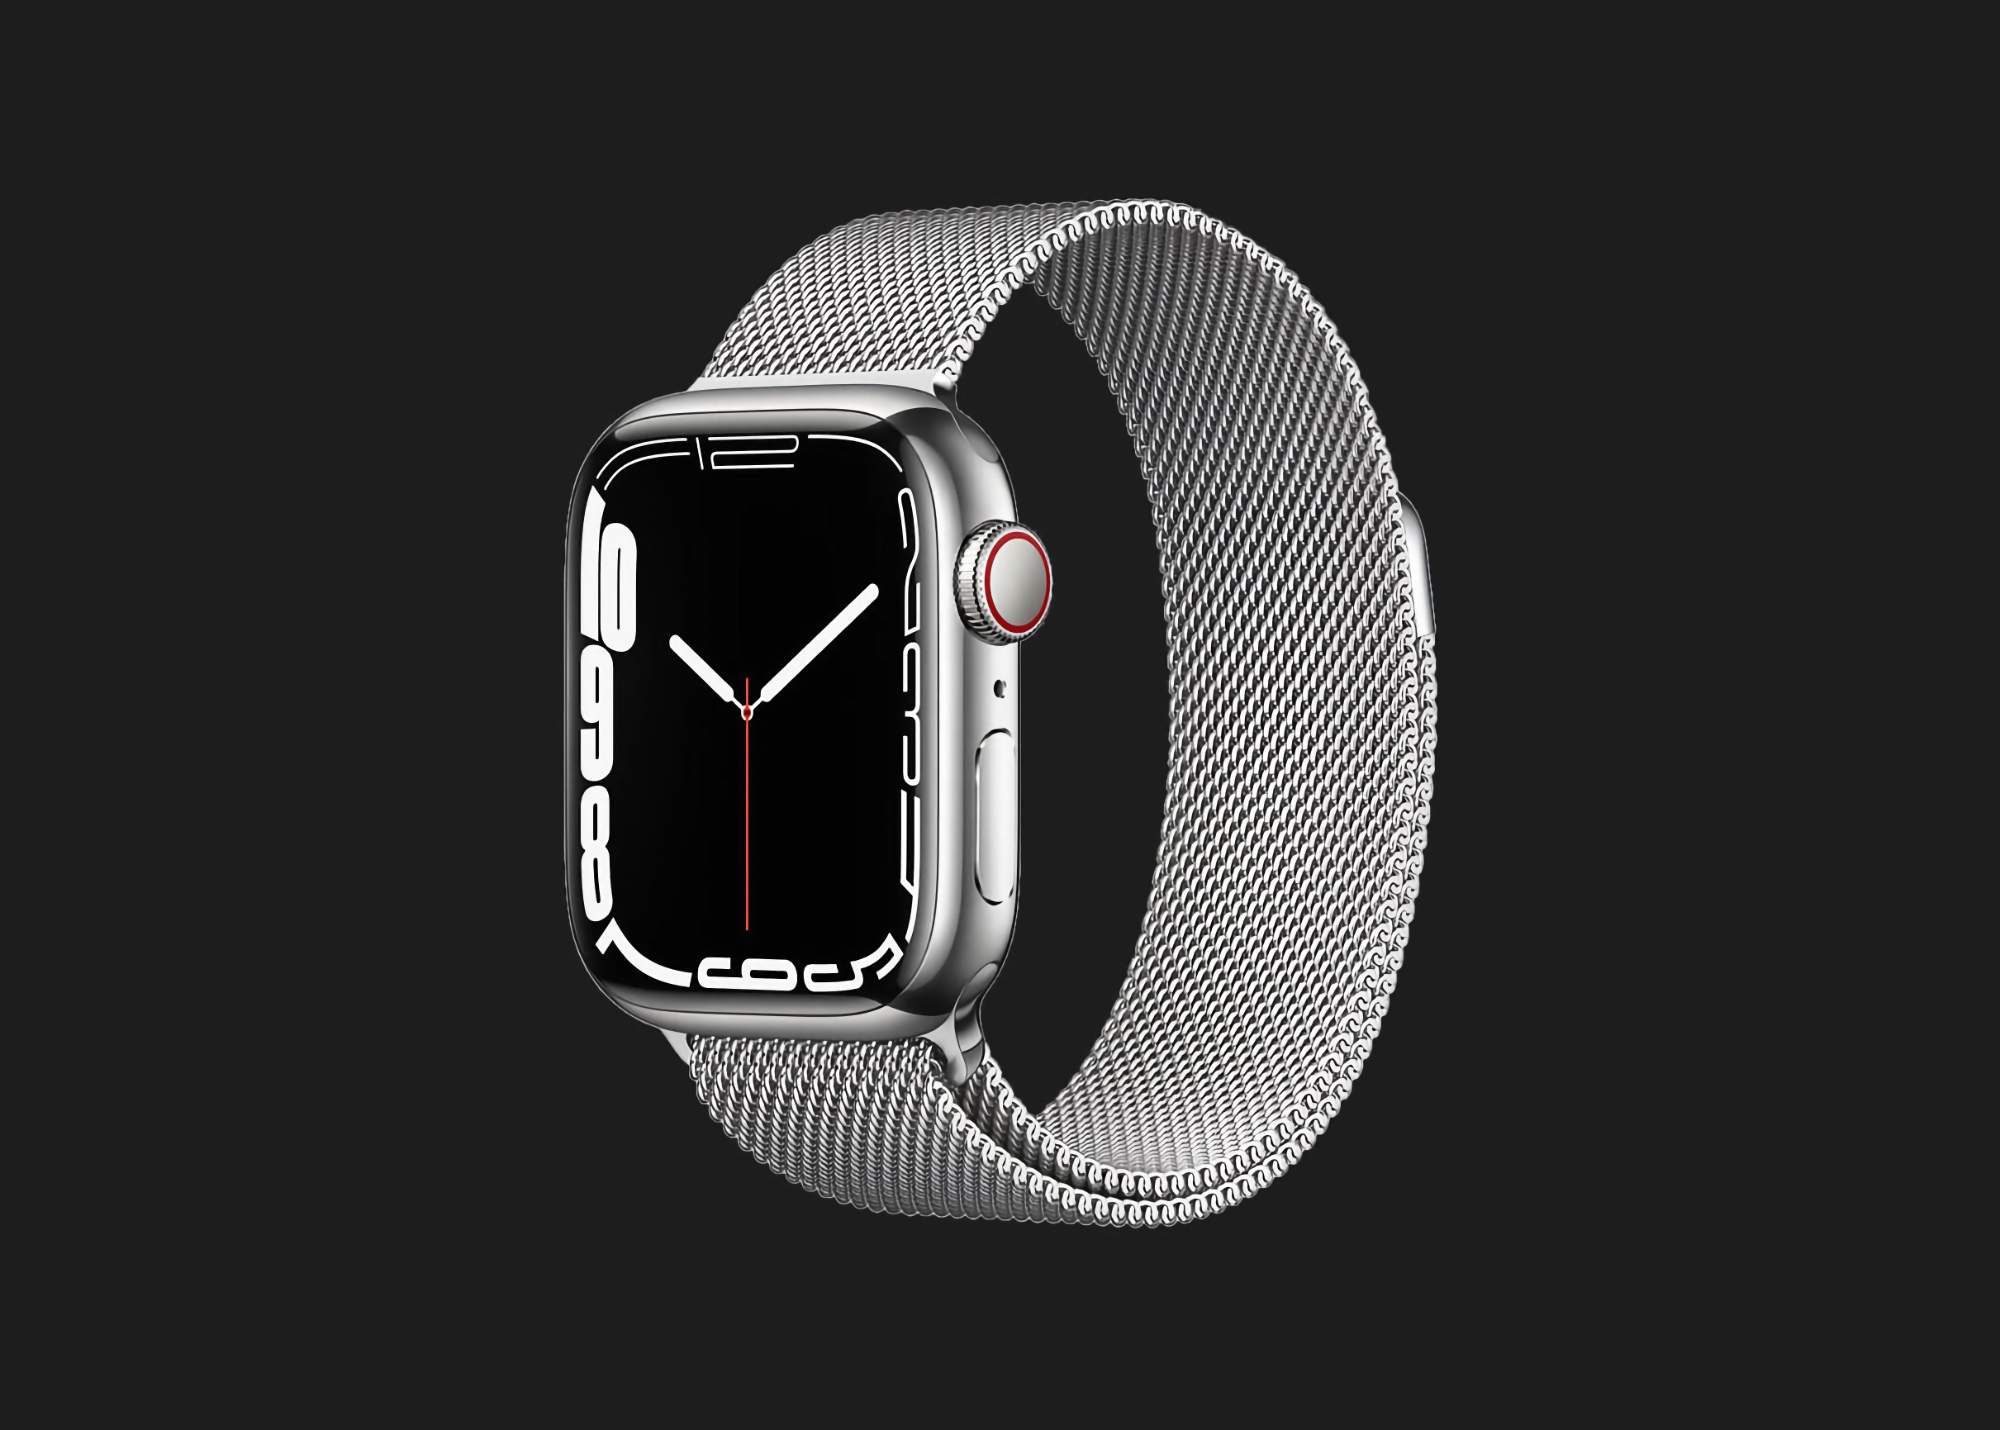 Offre limitée dans le temps : Apple Watch Series 7 avec support mobile et boîtier en acier inoxydable disponible sur Amazon avec une remise de 78 dollars